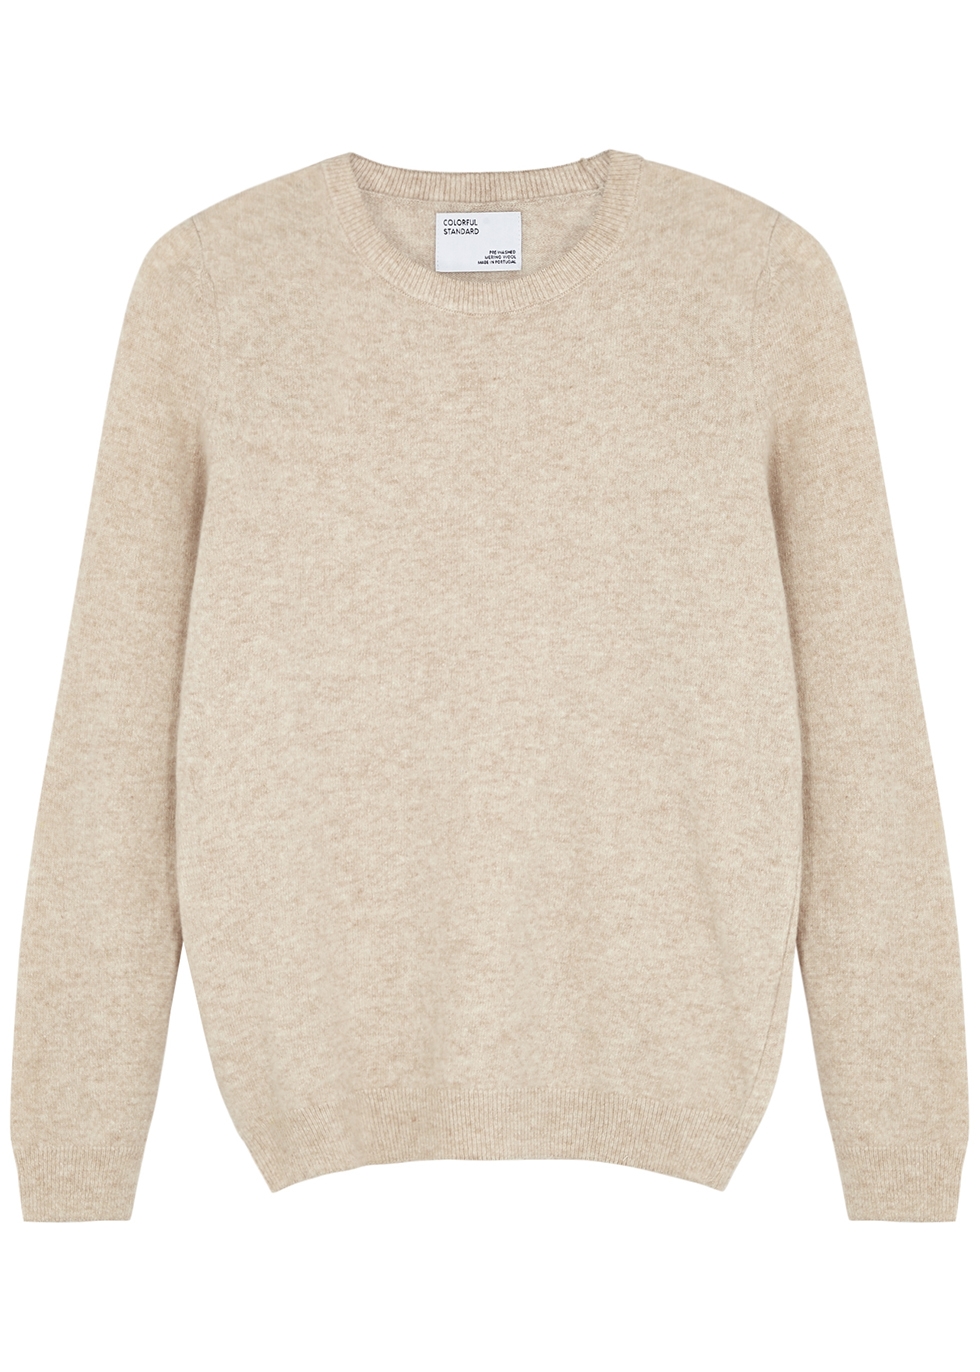 cream merino wool sweater